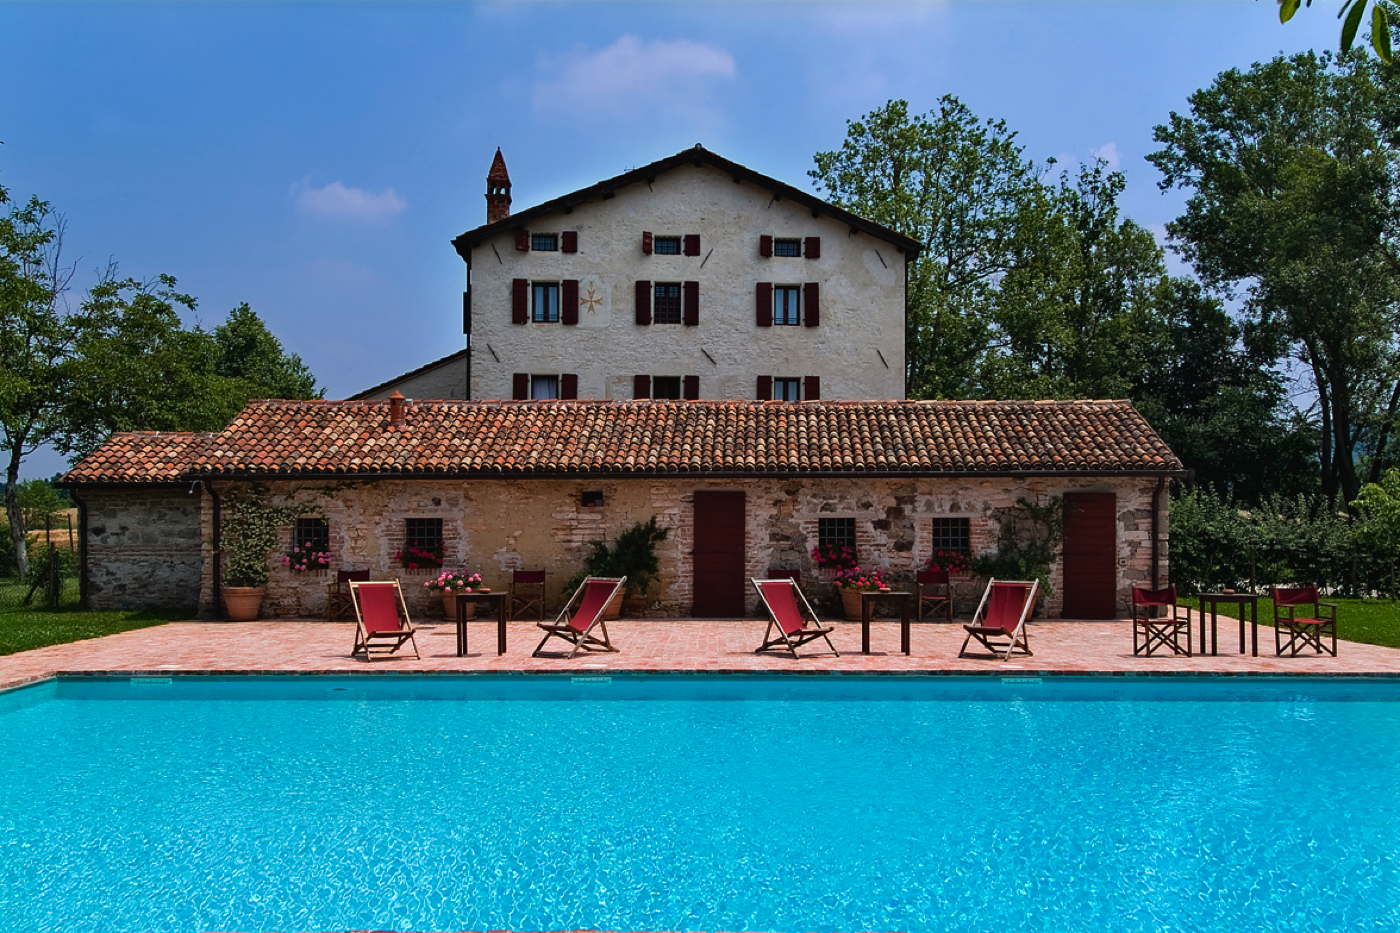 self catering villa-rental villa-holiday rental-vacation villa in Italy-Veneto-Frassanelle